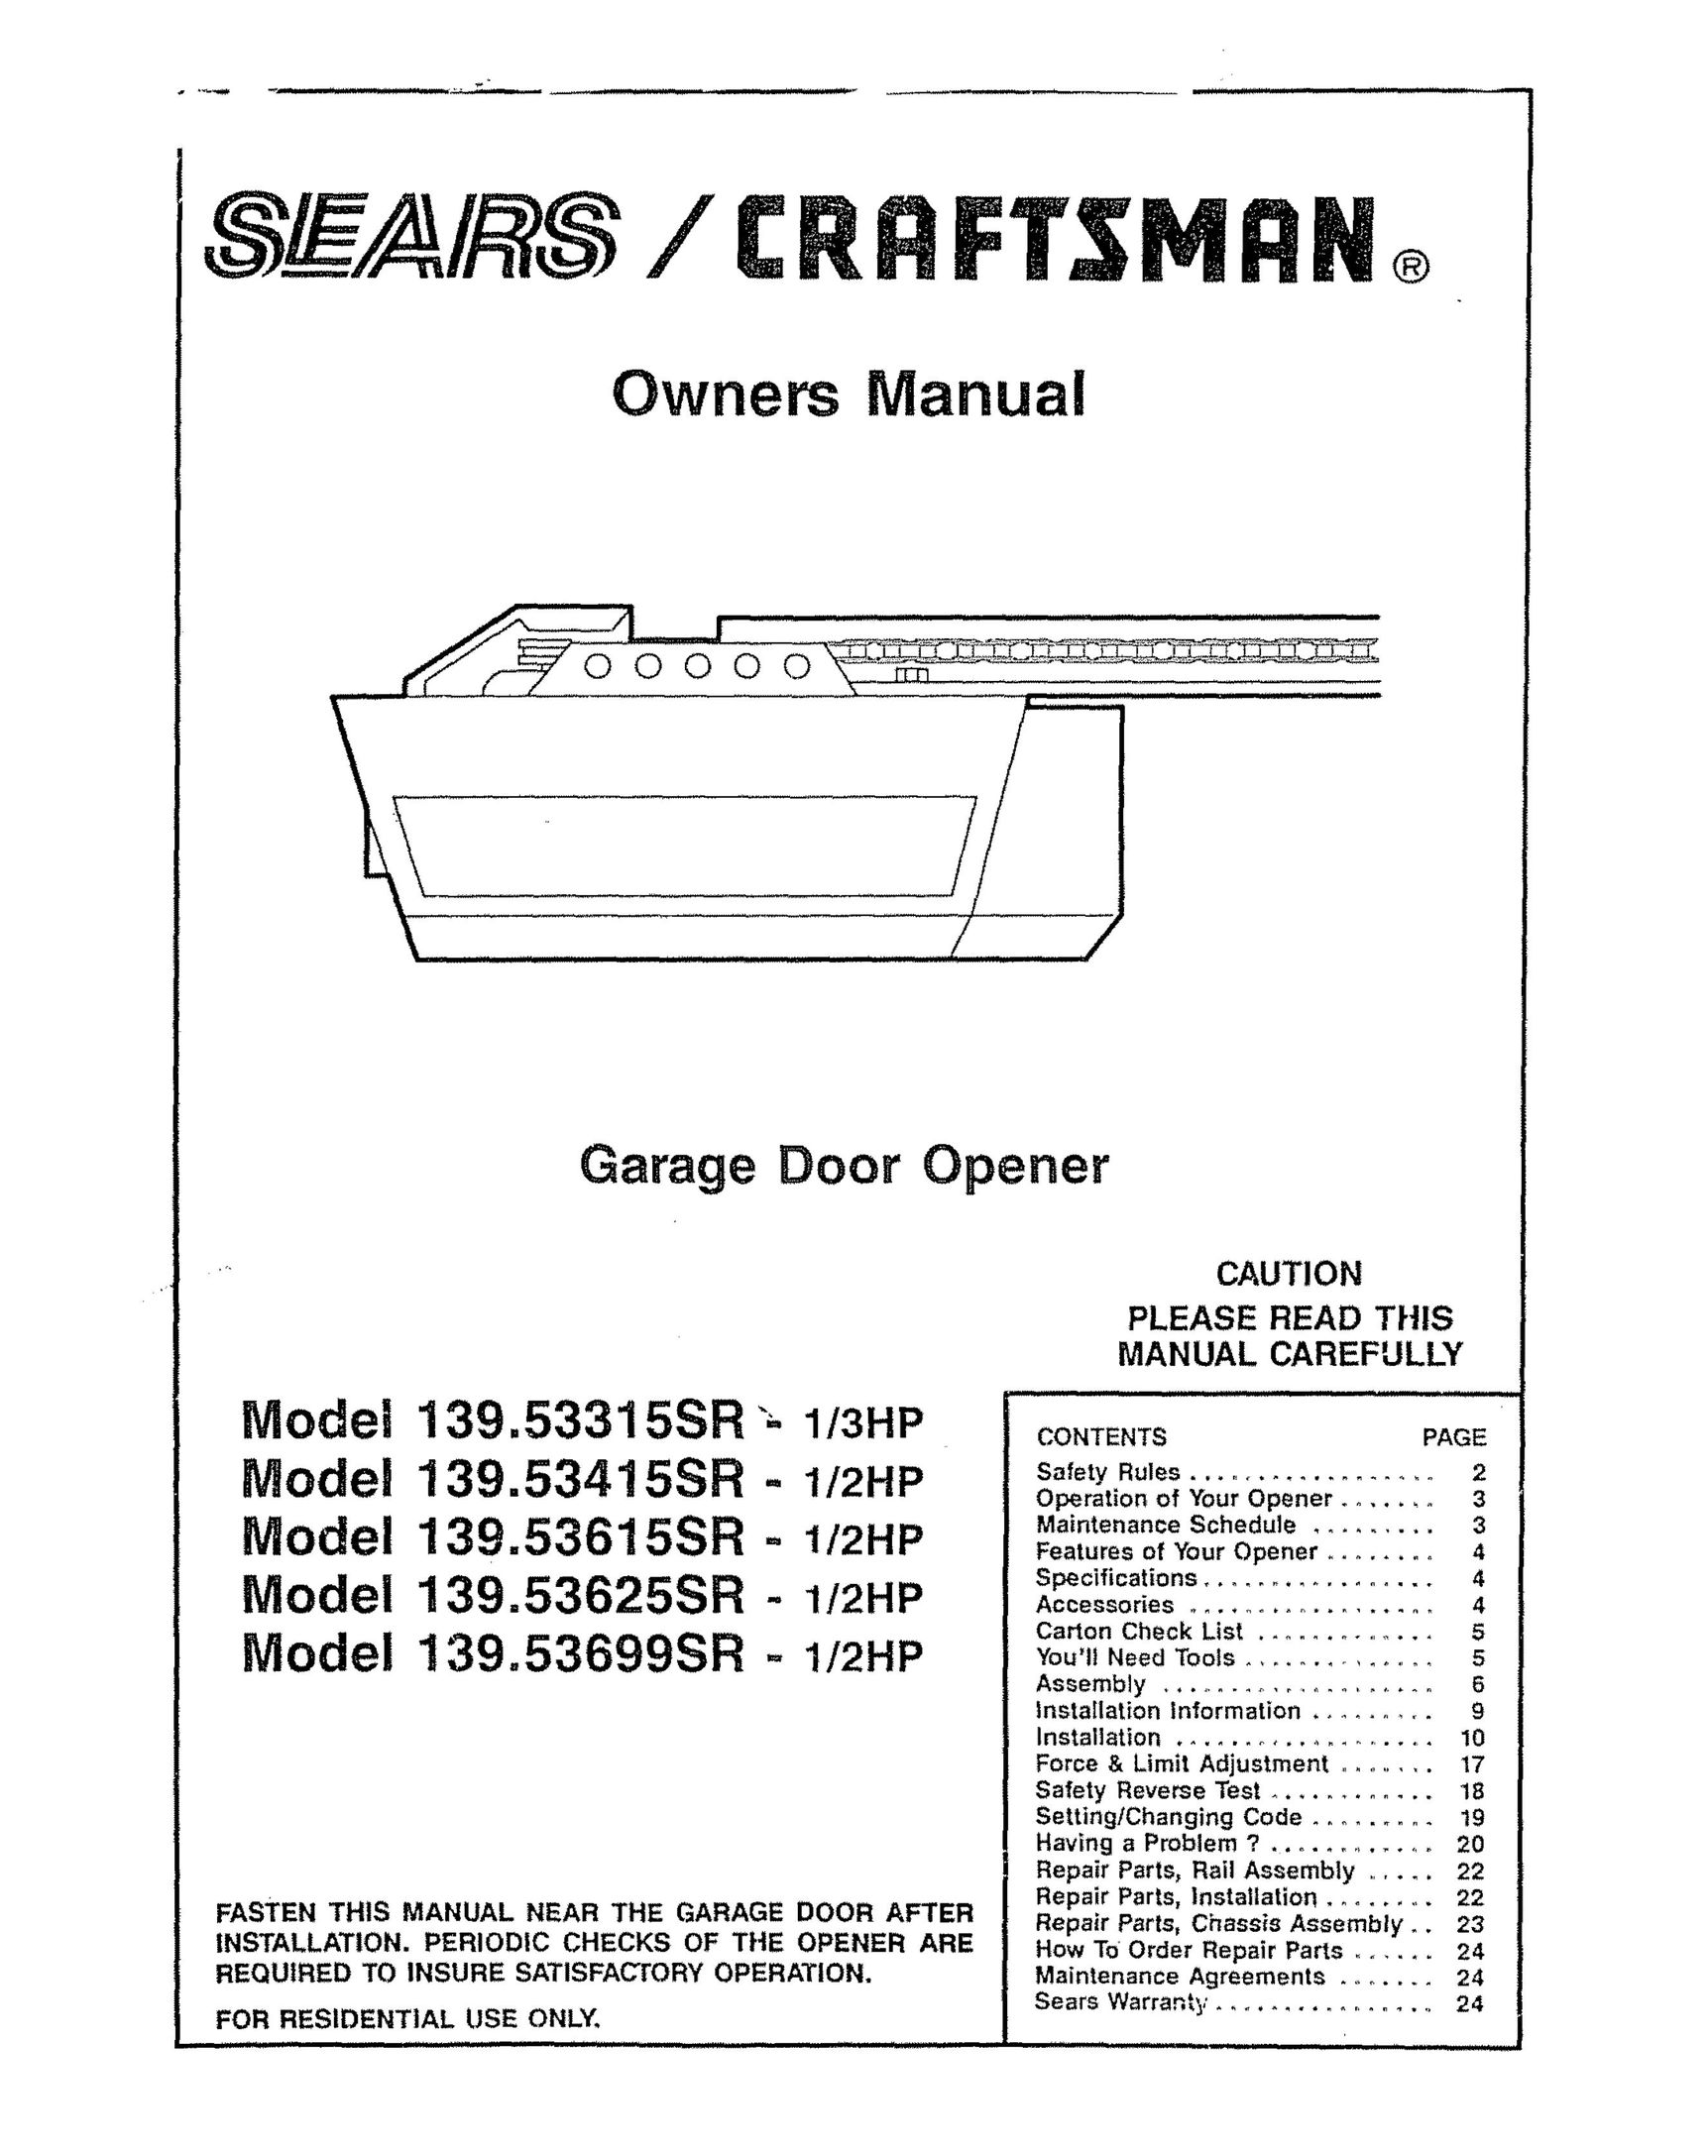 Craftsman 139.53625SR Garage Door Opener User Manual